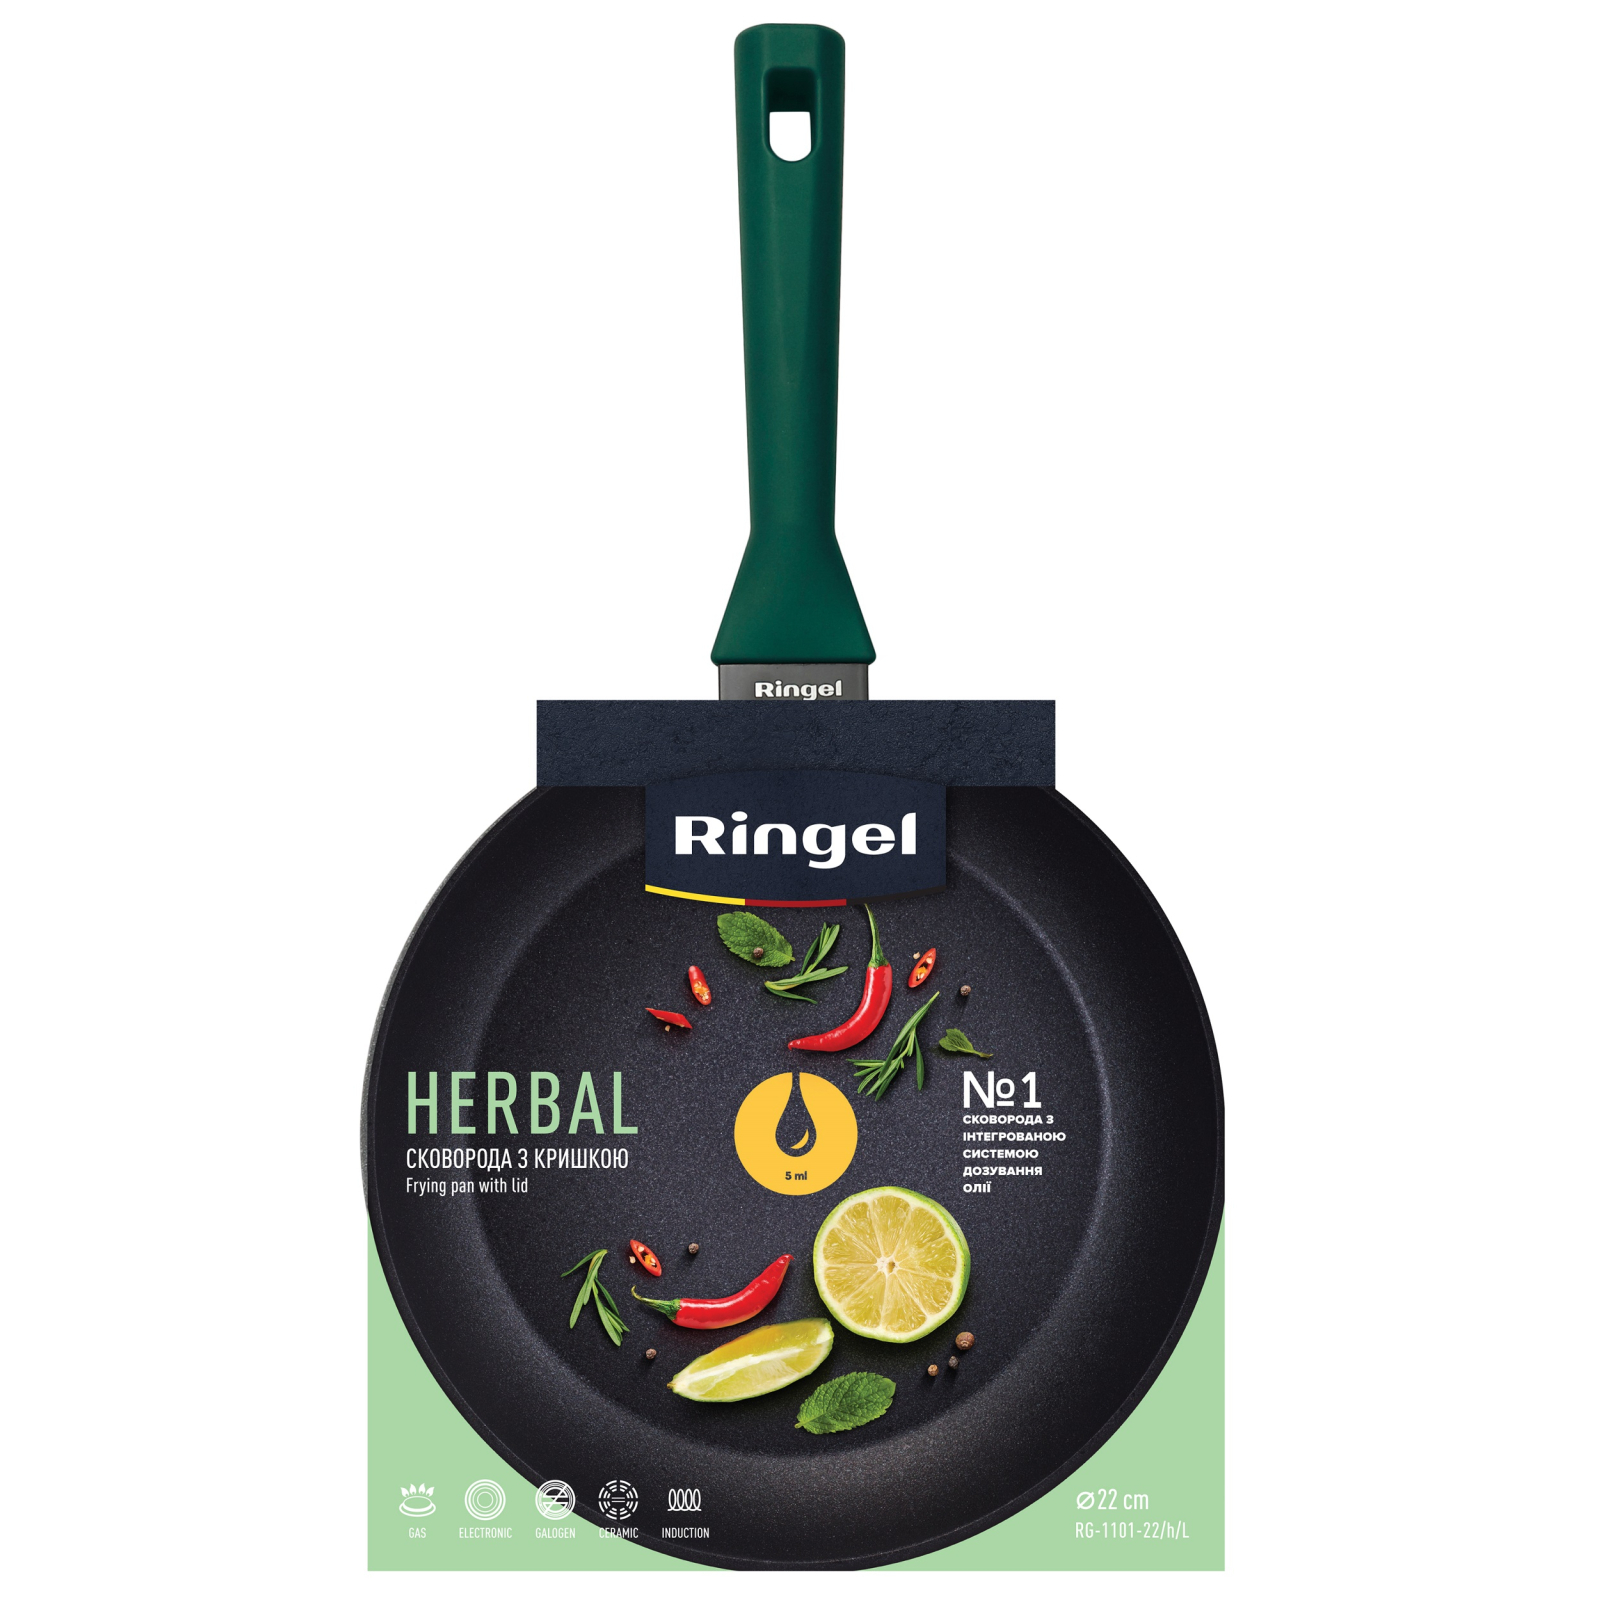 Сковорода Ringel Herbal 26 см (RG-1101-26/h/L) зображення 2